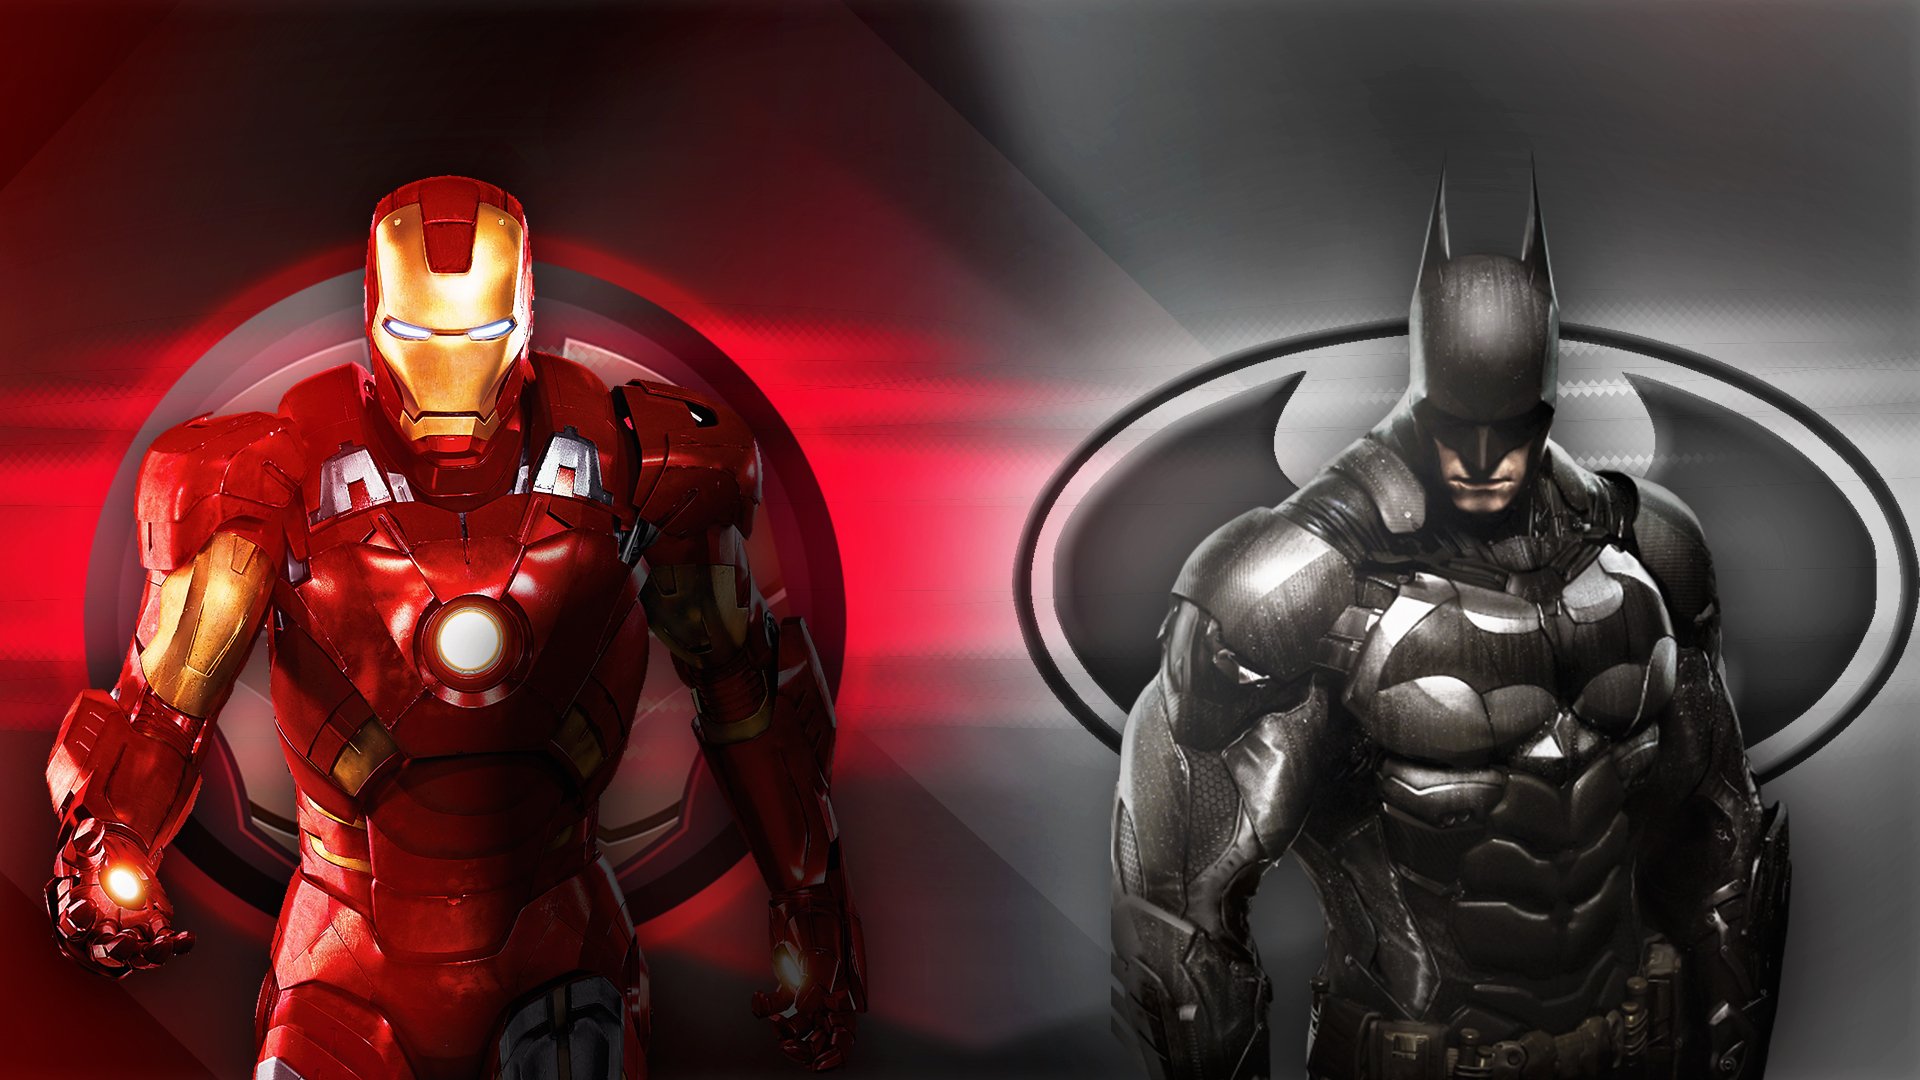 Iron man & Batman by AltEdits-ig